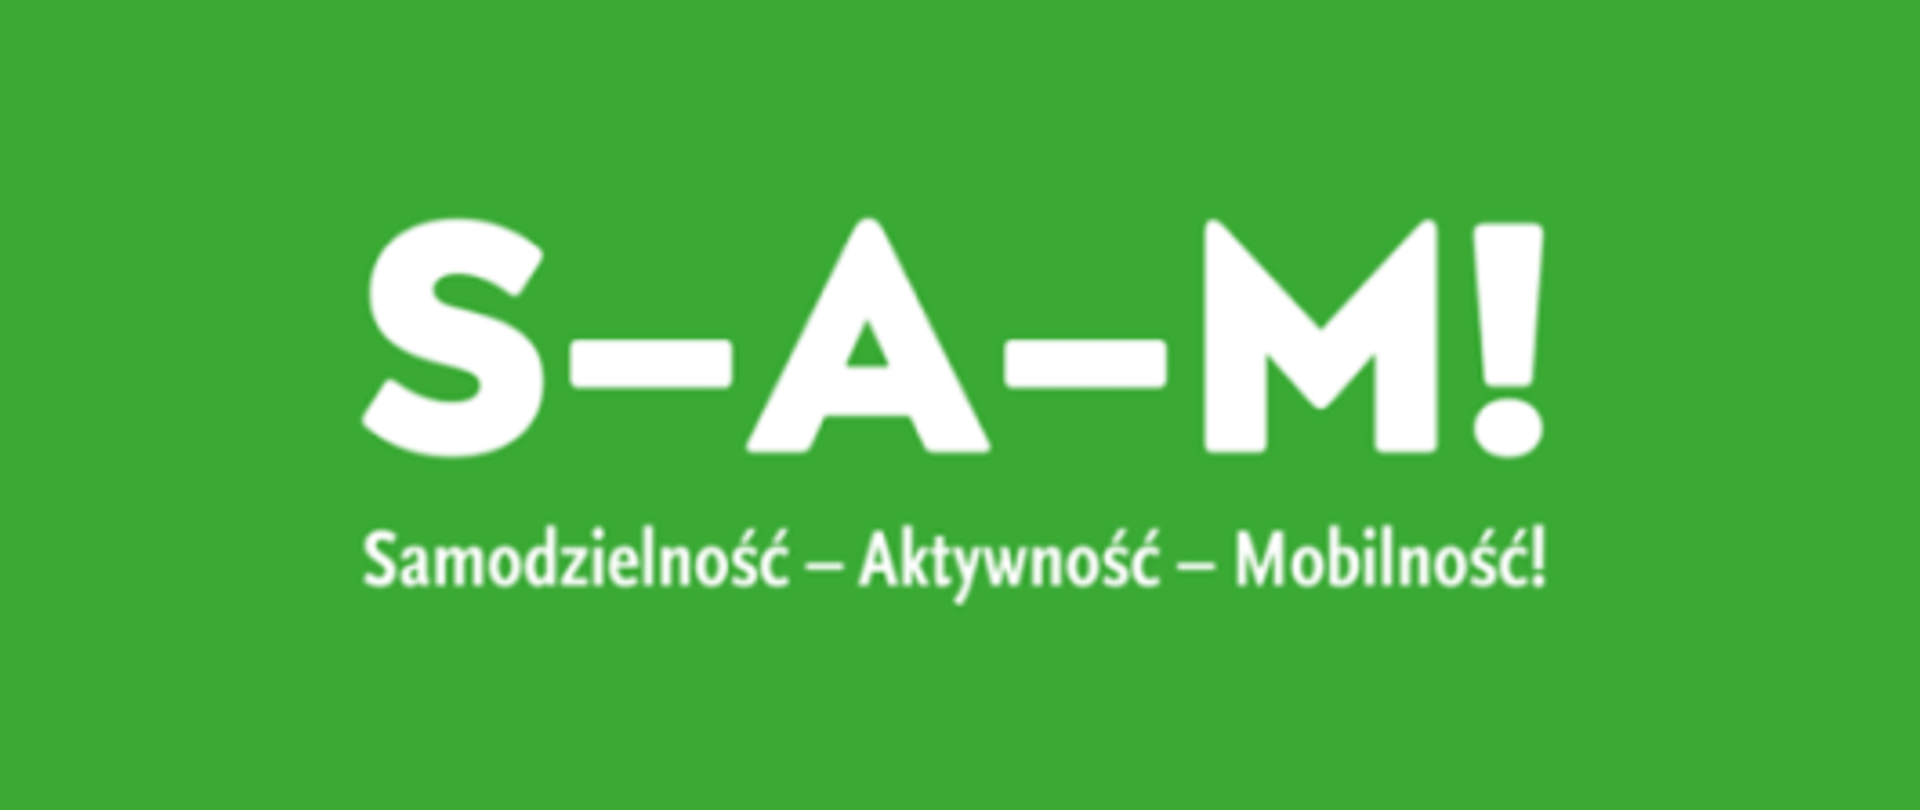 Białe logo programu samodzielność aktywność mobilność na zielonym tle 